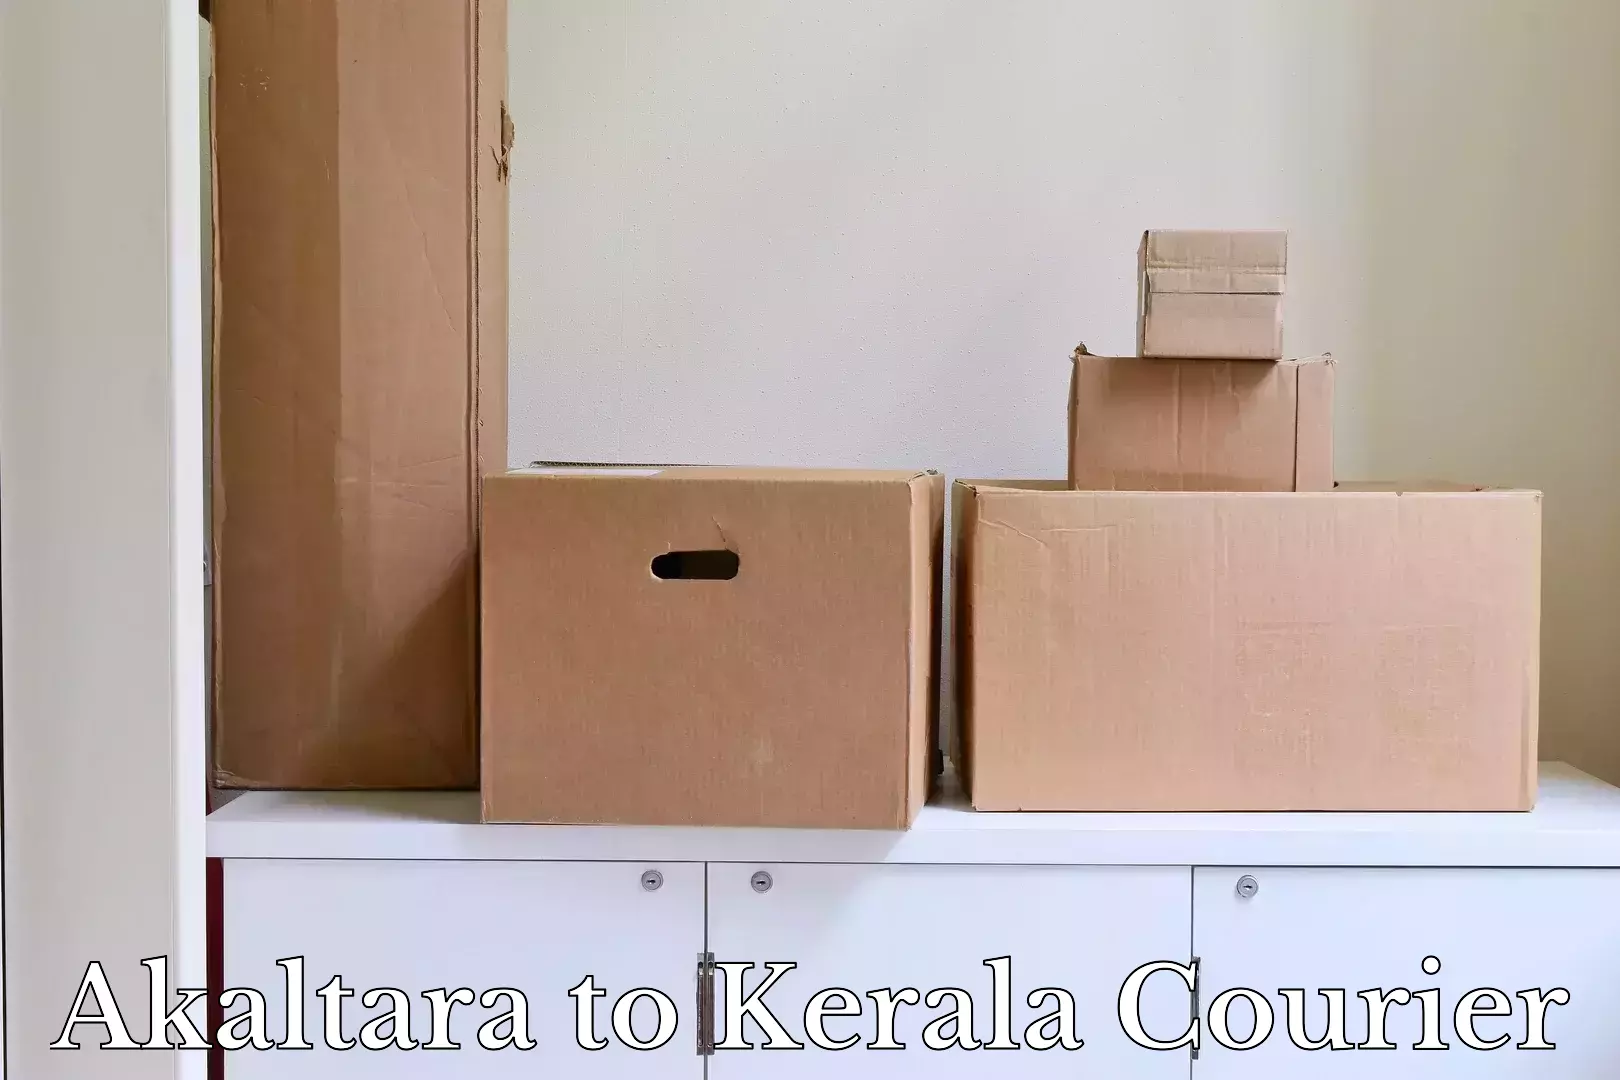 Luggage transit service Akaltara to Kerala